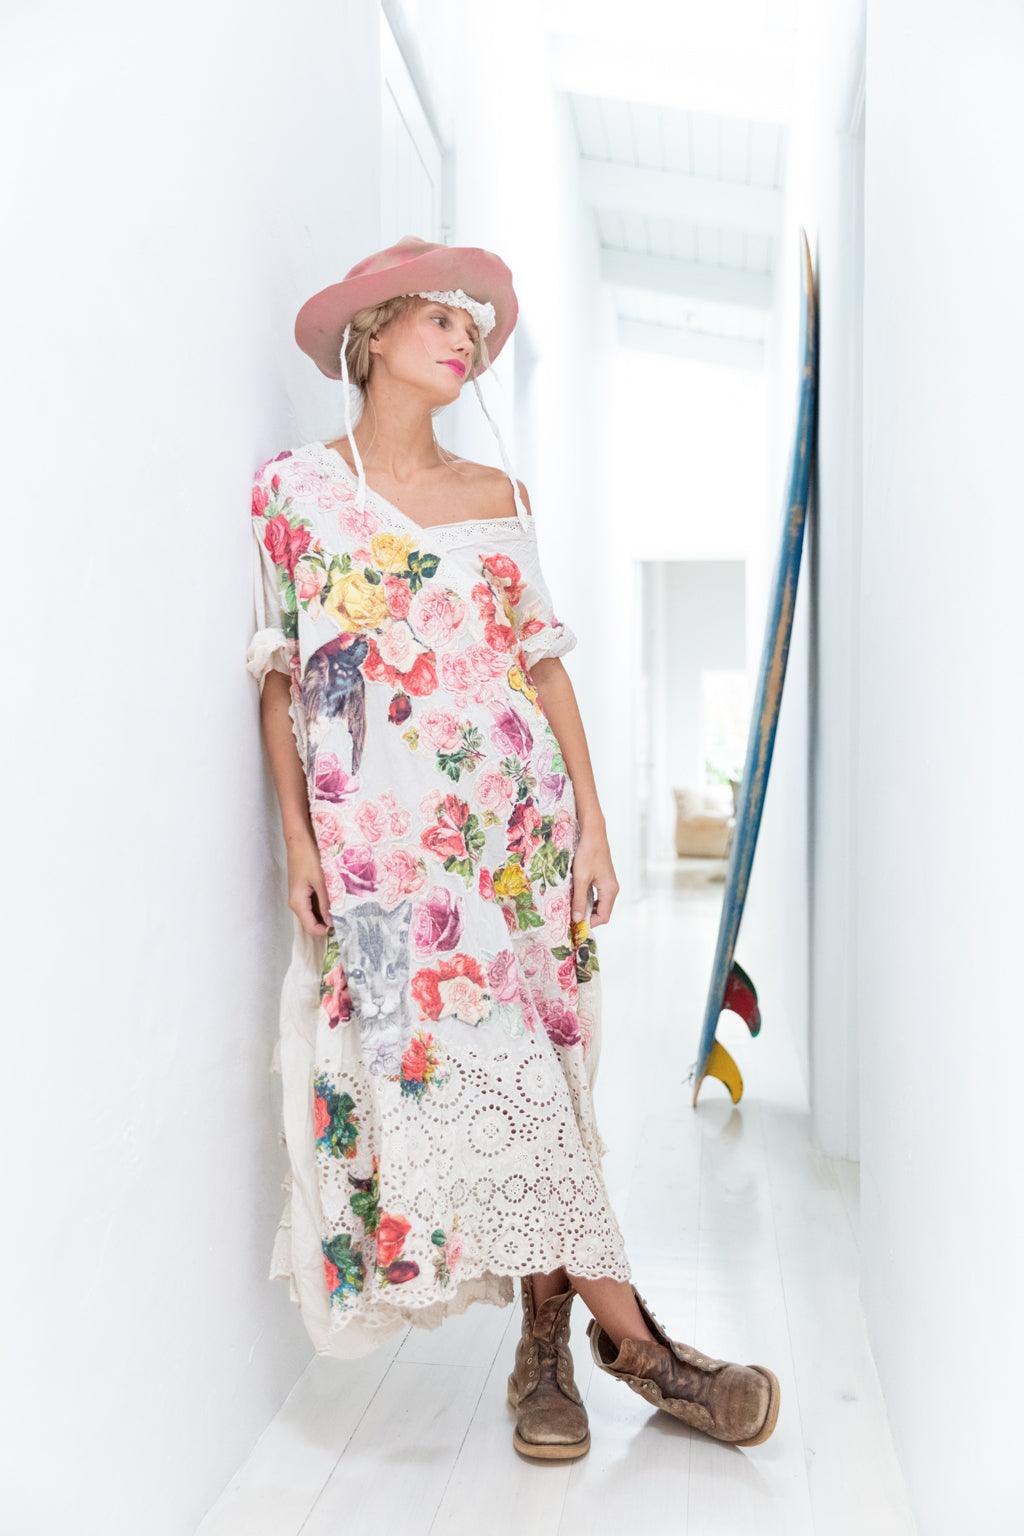 Appliqué Mattie Belle Dress - Magnolia Pearl Clothing